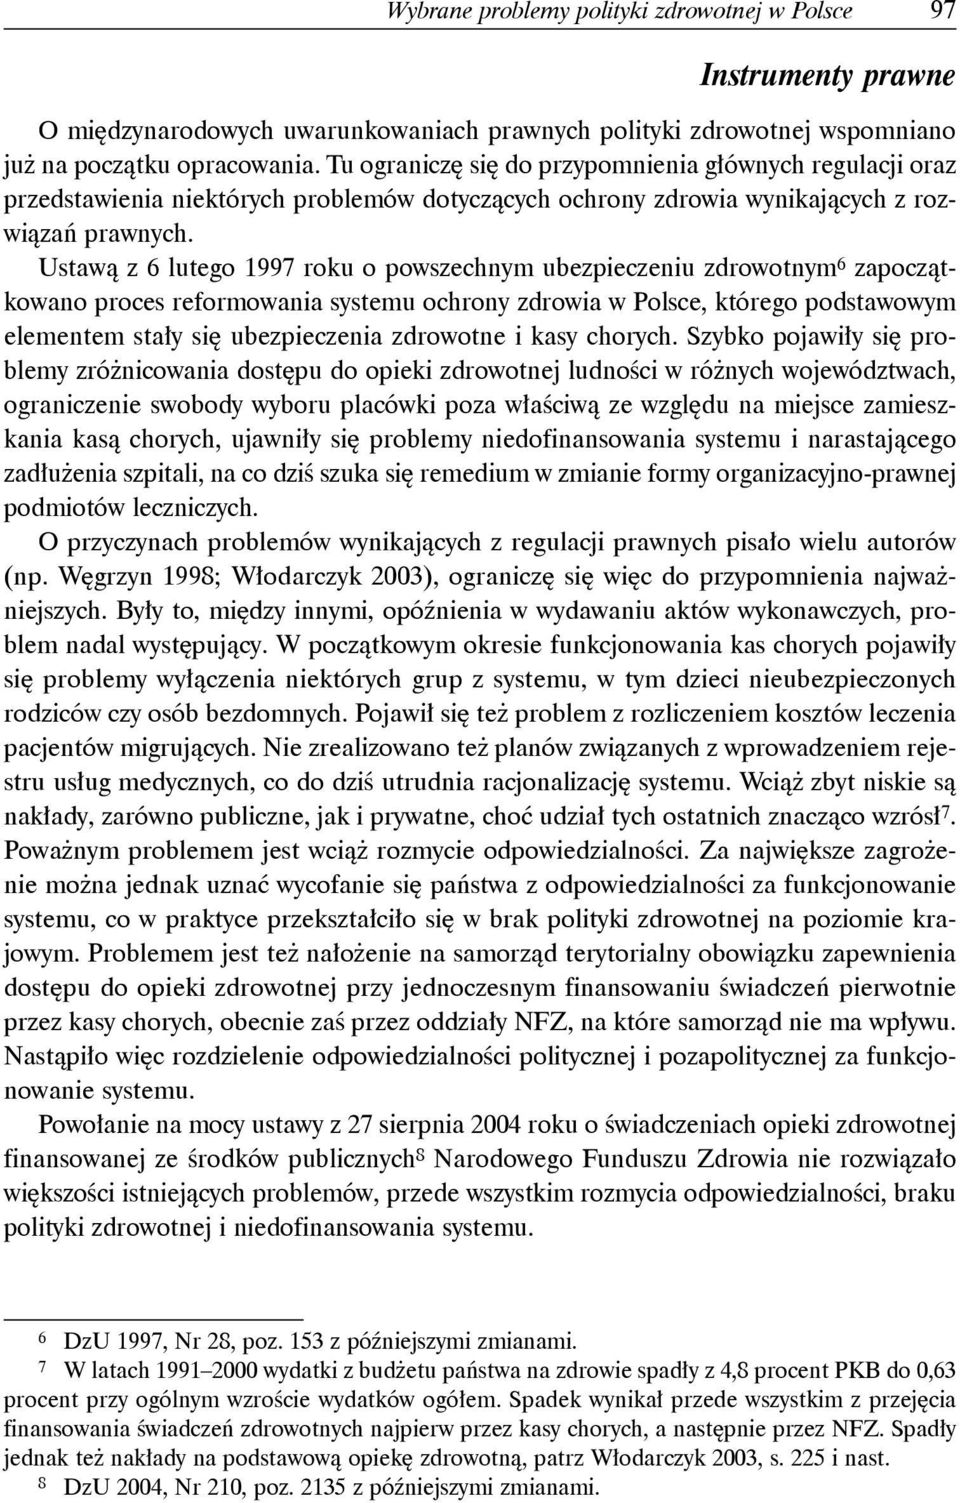 Ustawą z 6 lutego 1997 roku o powszechnym ubezpieczeniu zdrowotnym 6 zapoczątkowano proces reformowania systemu ochrony zdrowia w Polsce, którego podstawowym elementem stały się ubezpieczenia